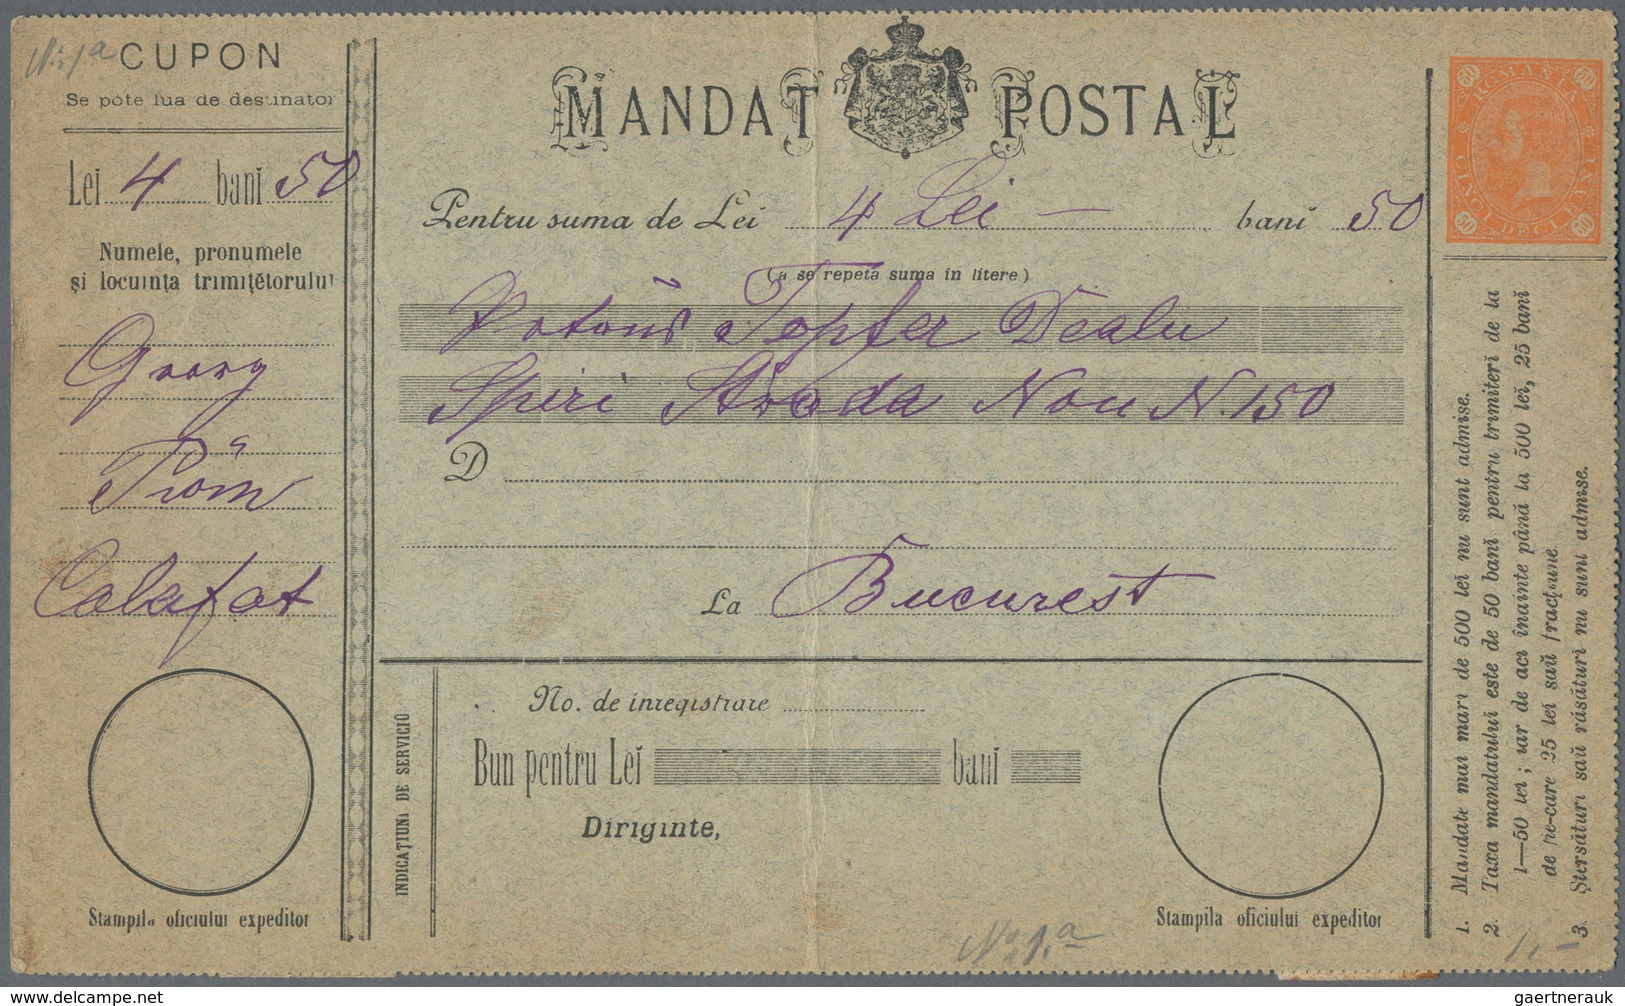 Rumänien - Ganzsachen: 1912 - 1969 (ca.), Collection Items Of Postal Money Order Postal Stationery F - Ganzsachen